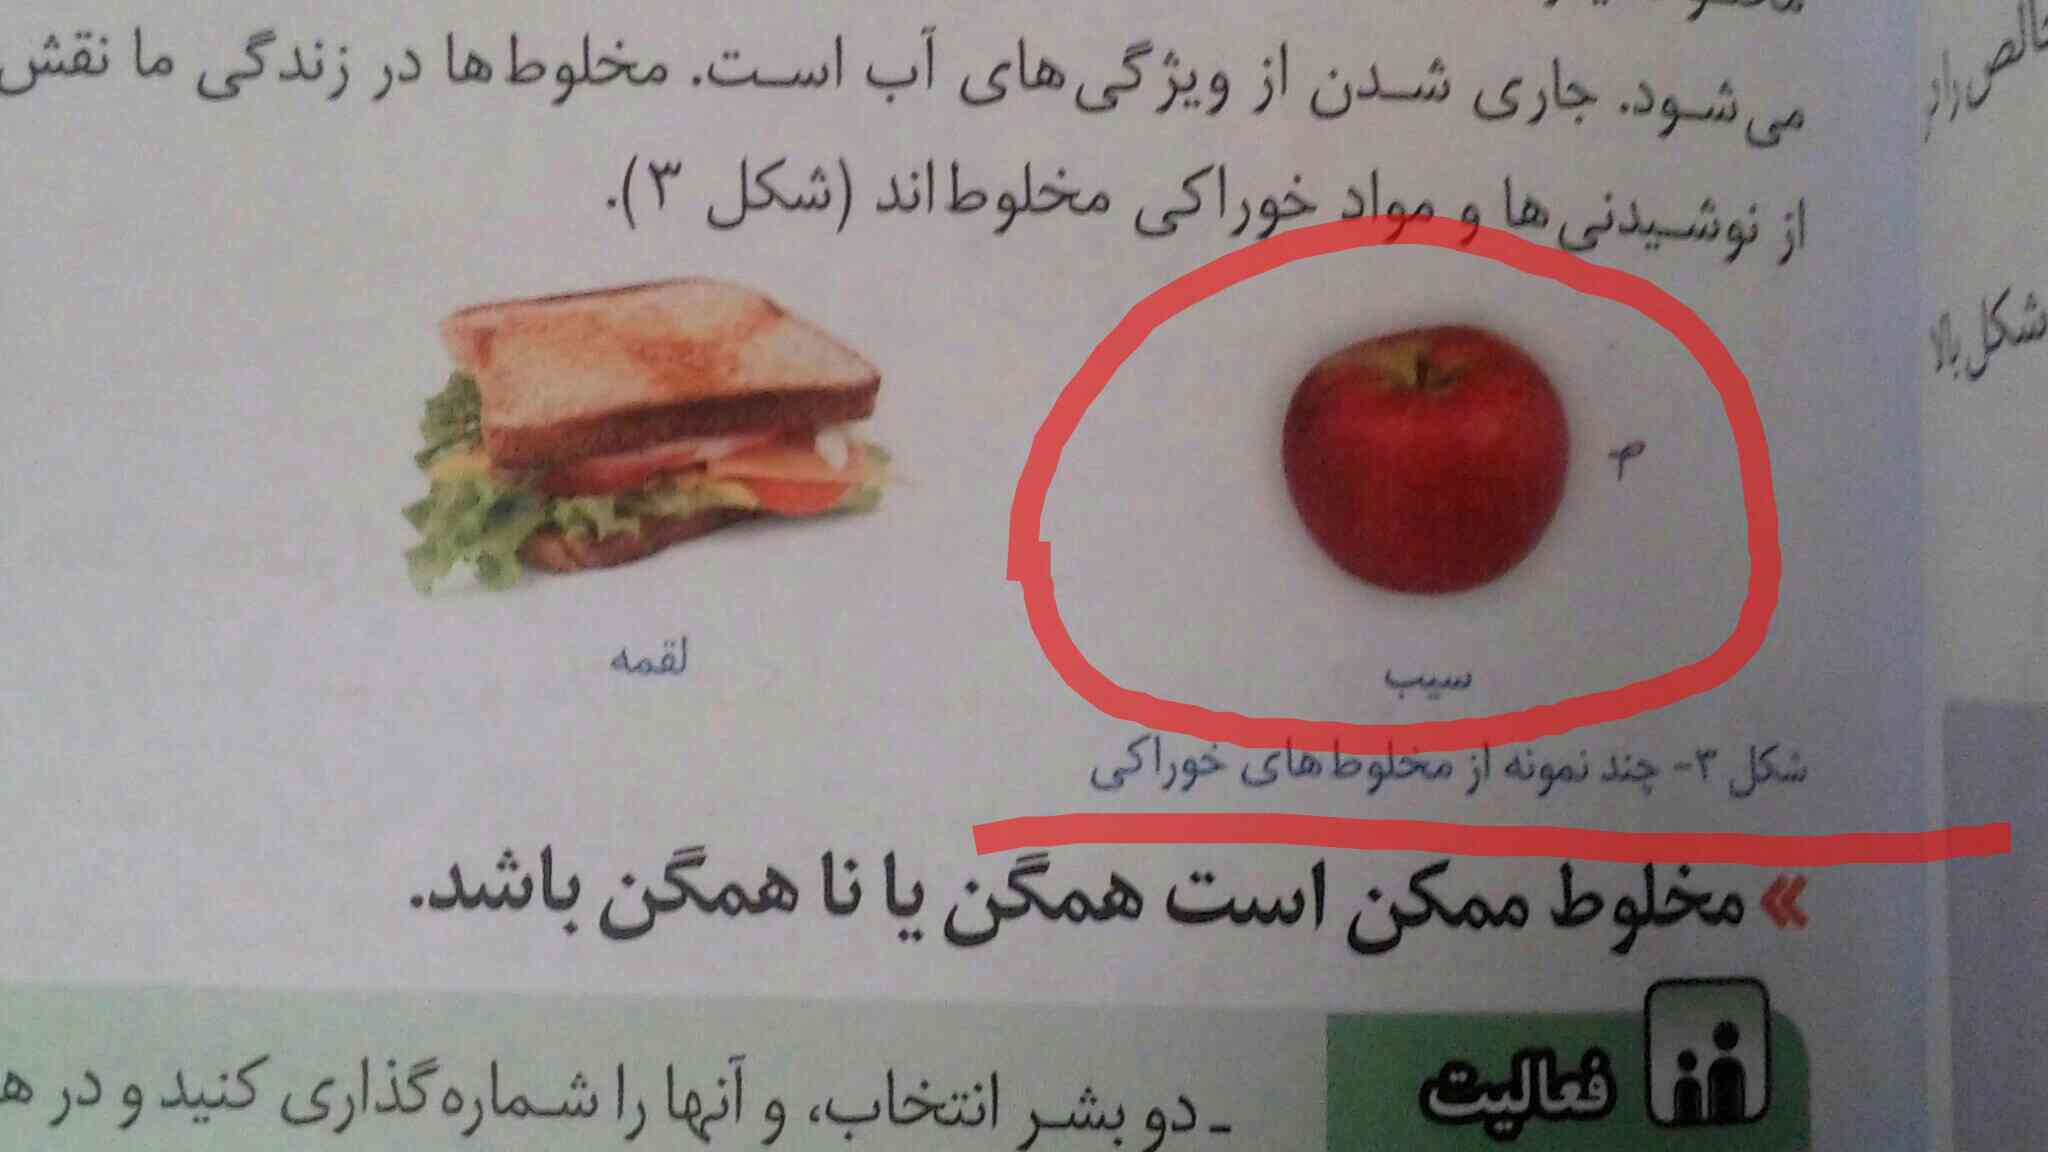 سلام .چرا سیب هم جز مخلوط خوراکی به حساب میاد ؟